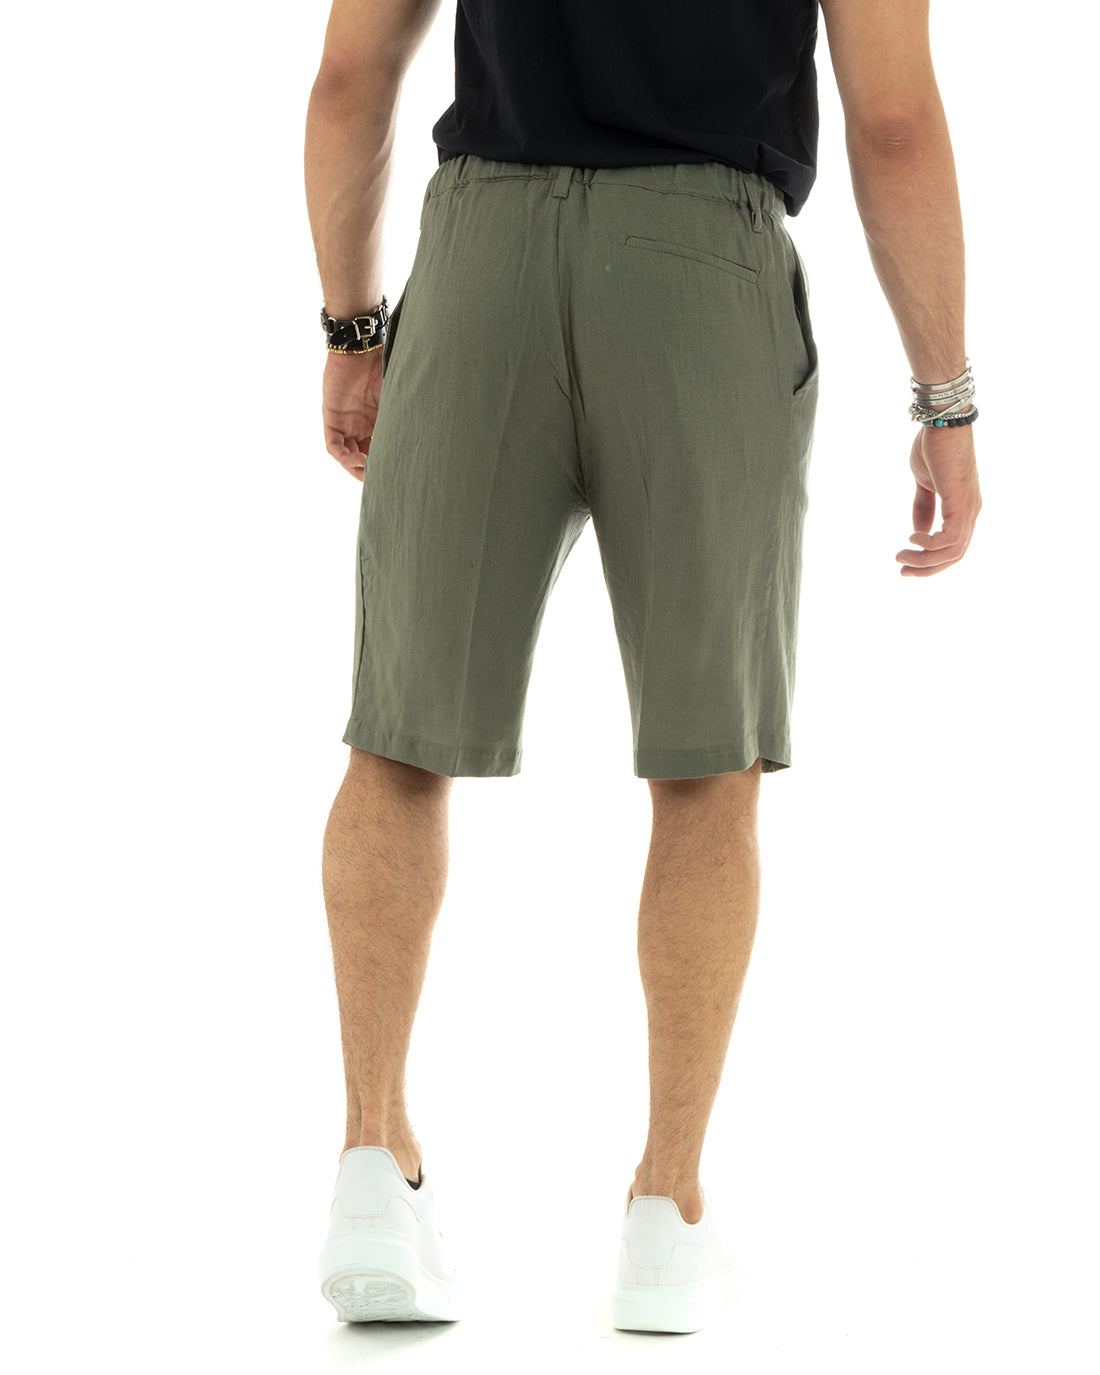 Bermuda Pantaloncino Uomo Corto Lino Tinta Unita Verde Sartoriale Con Laccetto GIOSAL-PC1931A